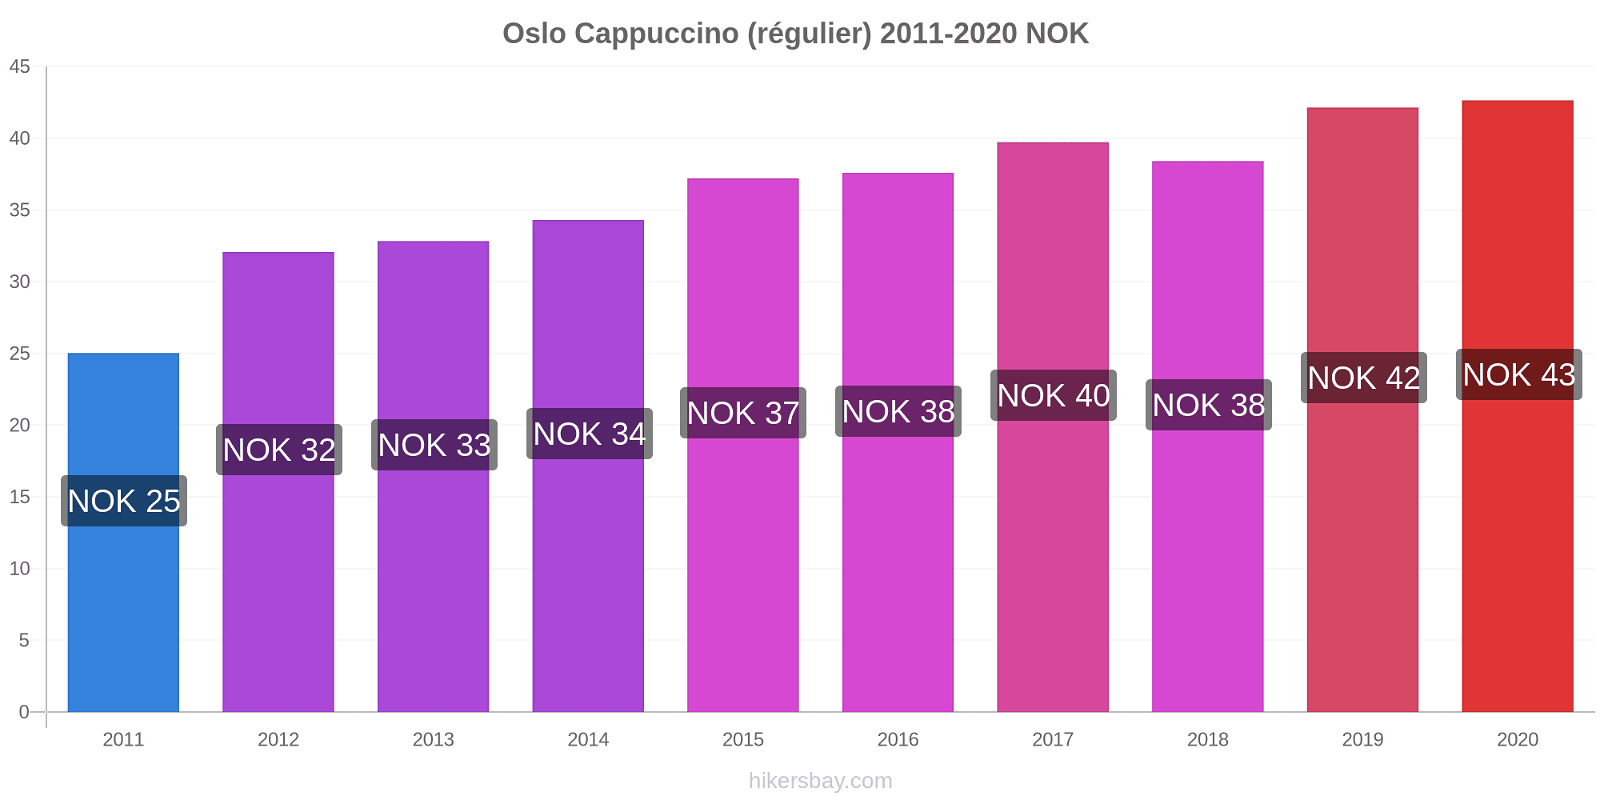 Oslo changements de prix Cappuccino (régulier) hikersbay.com